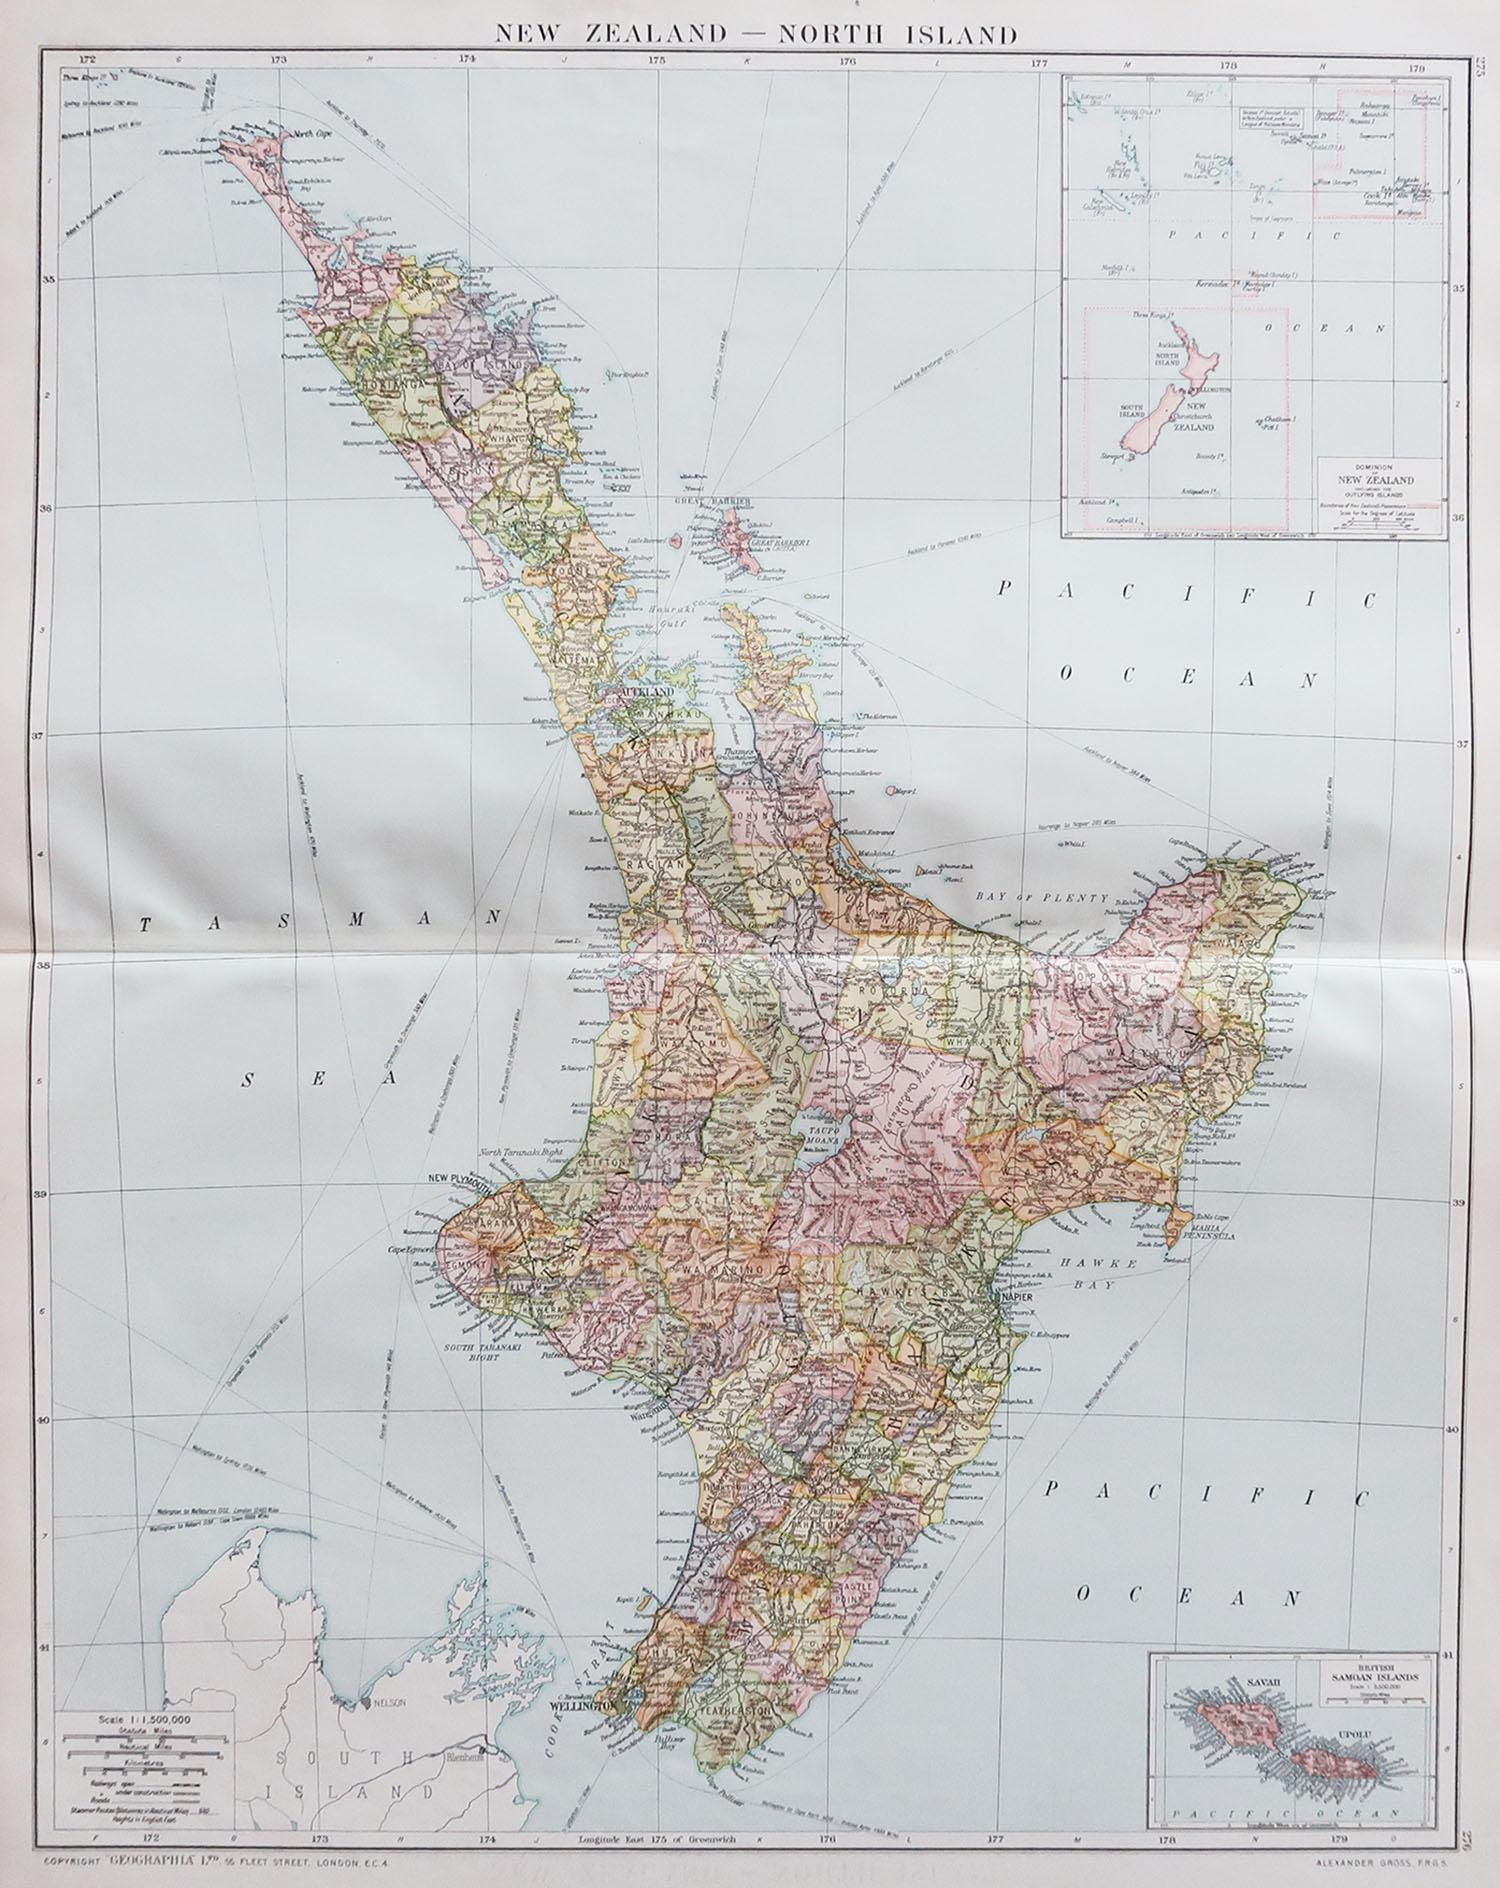 Große Karte der Nordinsel, Neuseeland

Originalfarbe. 

Guter Zustand / leichte Stockflecken am rechten Rand

Herausgegeben von Alexander Gross

Ungerahmt.








